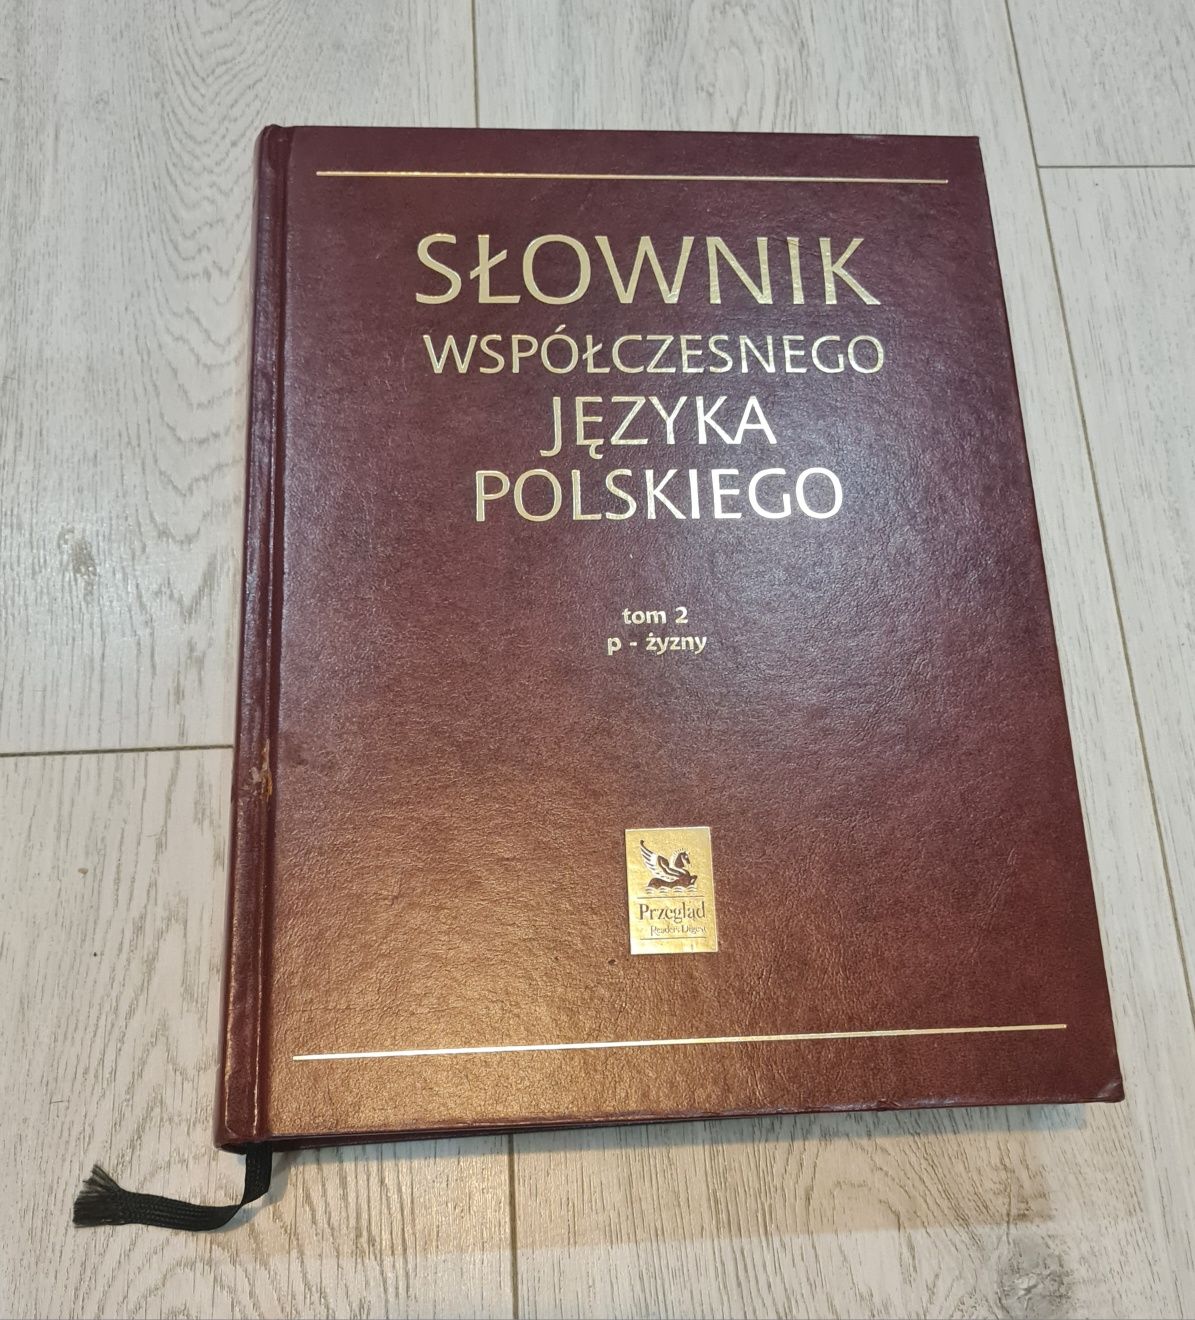 Książka zestaw Słownik współczesnego języka polskiego dwa tomy